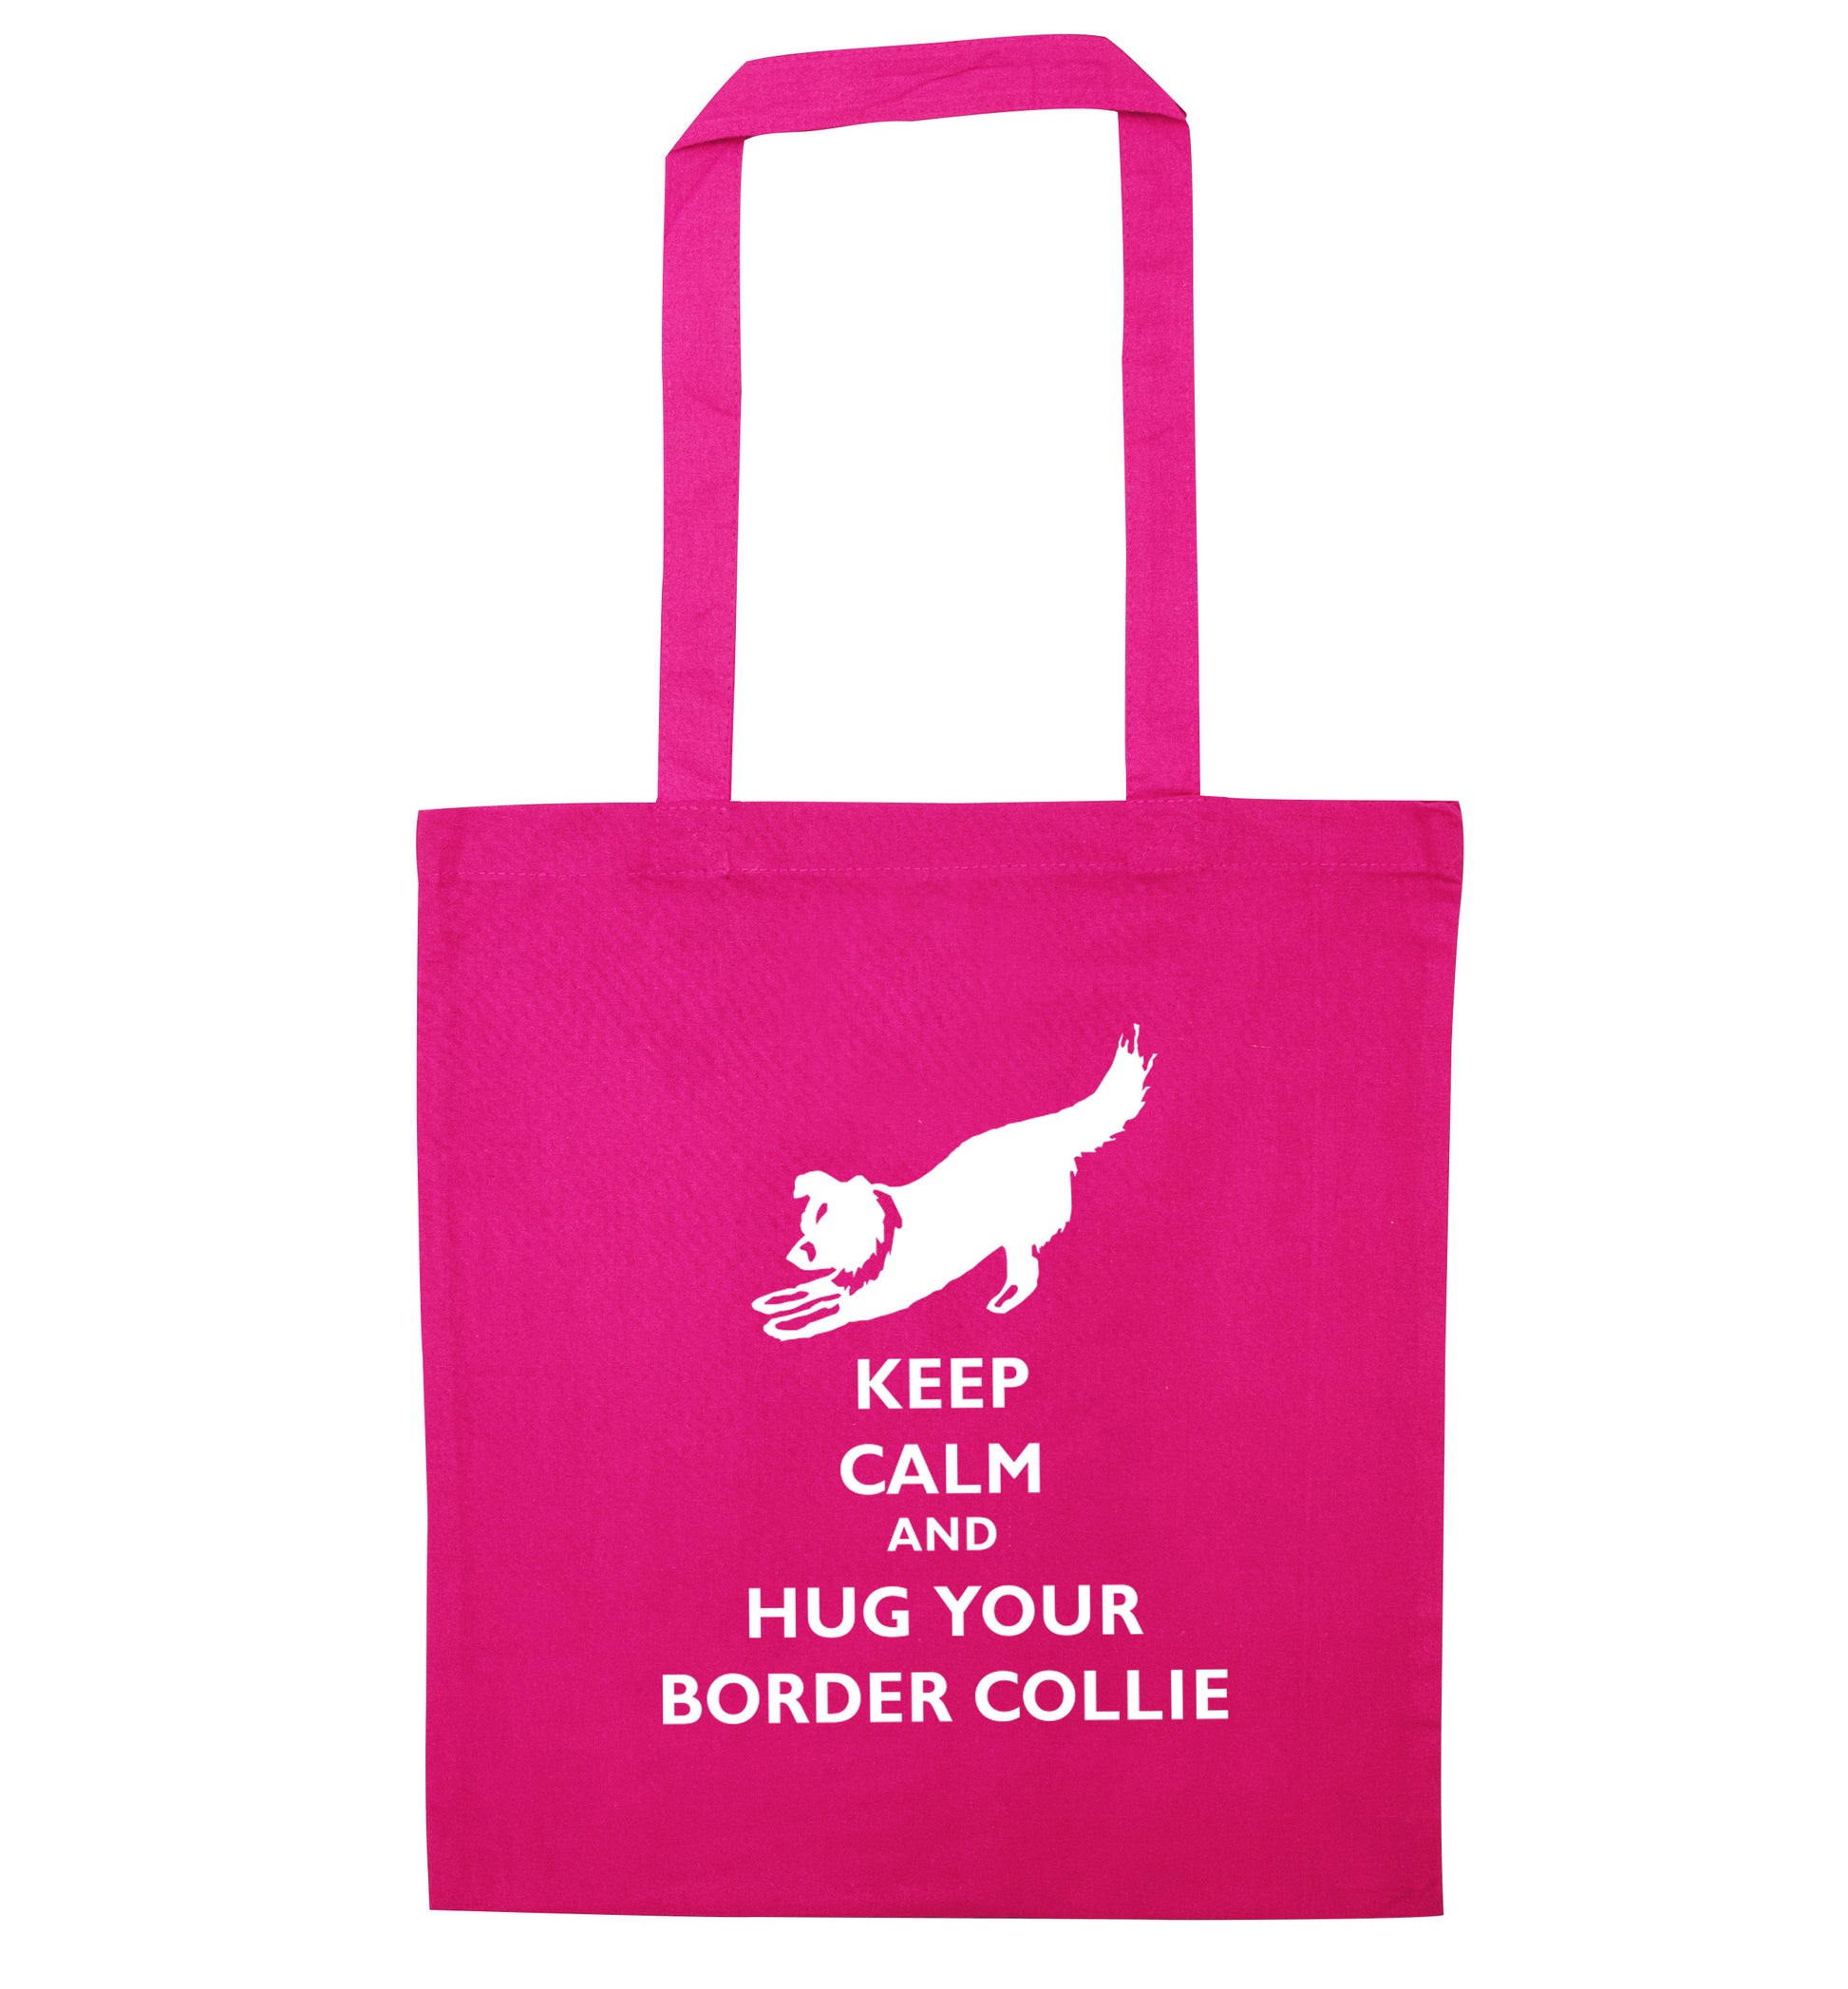 Keep calm and hug your border collie pink tote bag